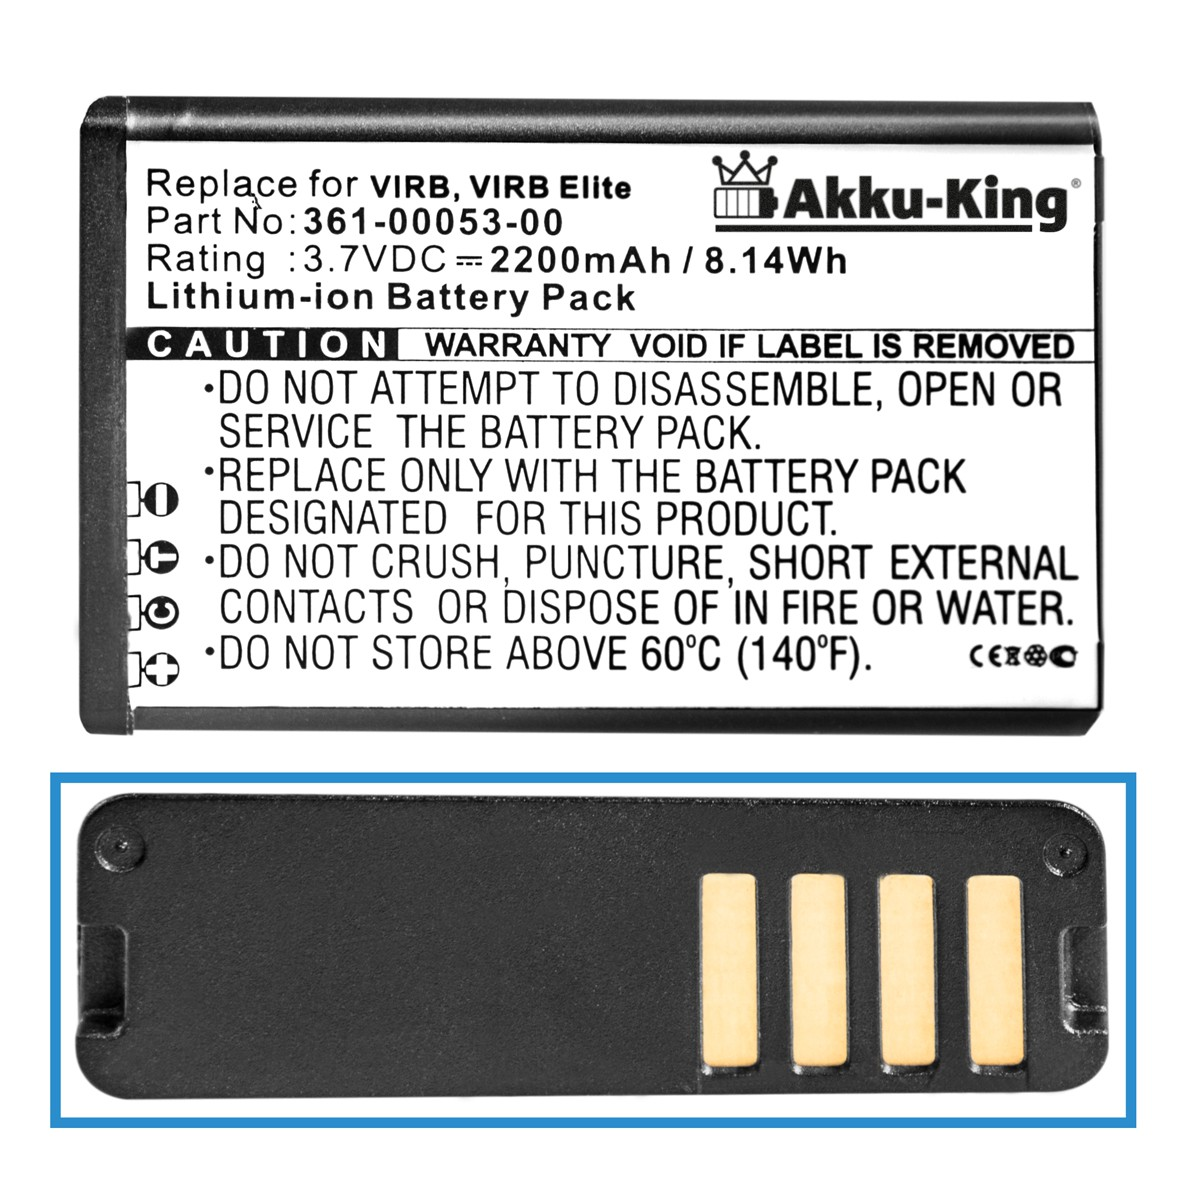 AKKU-KING Akku kompatibel mit 2200mAh Li-Ion 010-11599-00 Volt, Garmin Kamera-Akku, 3.7